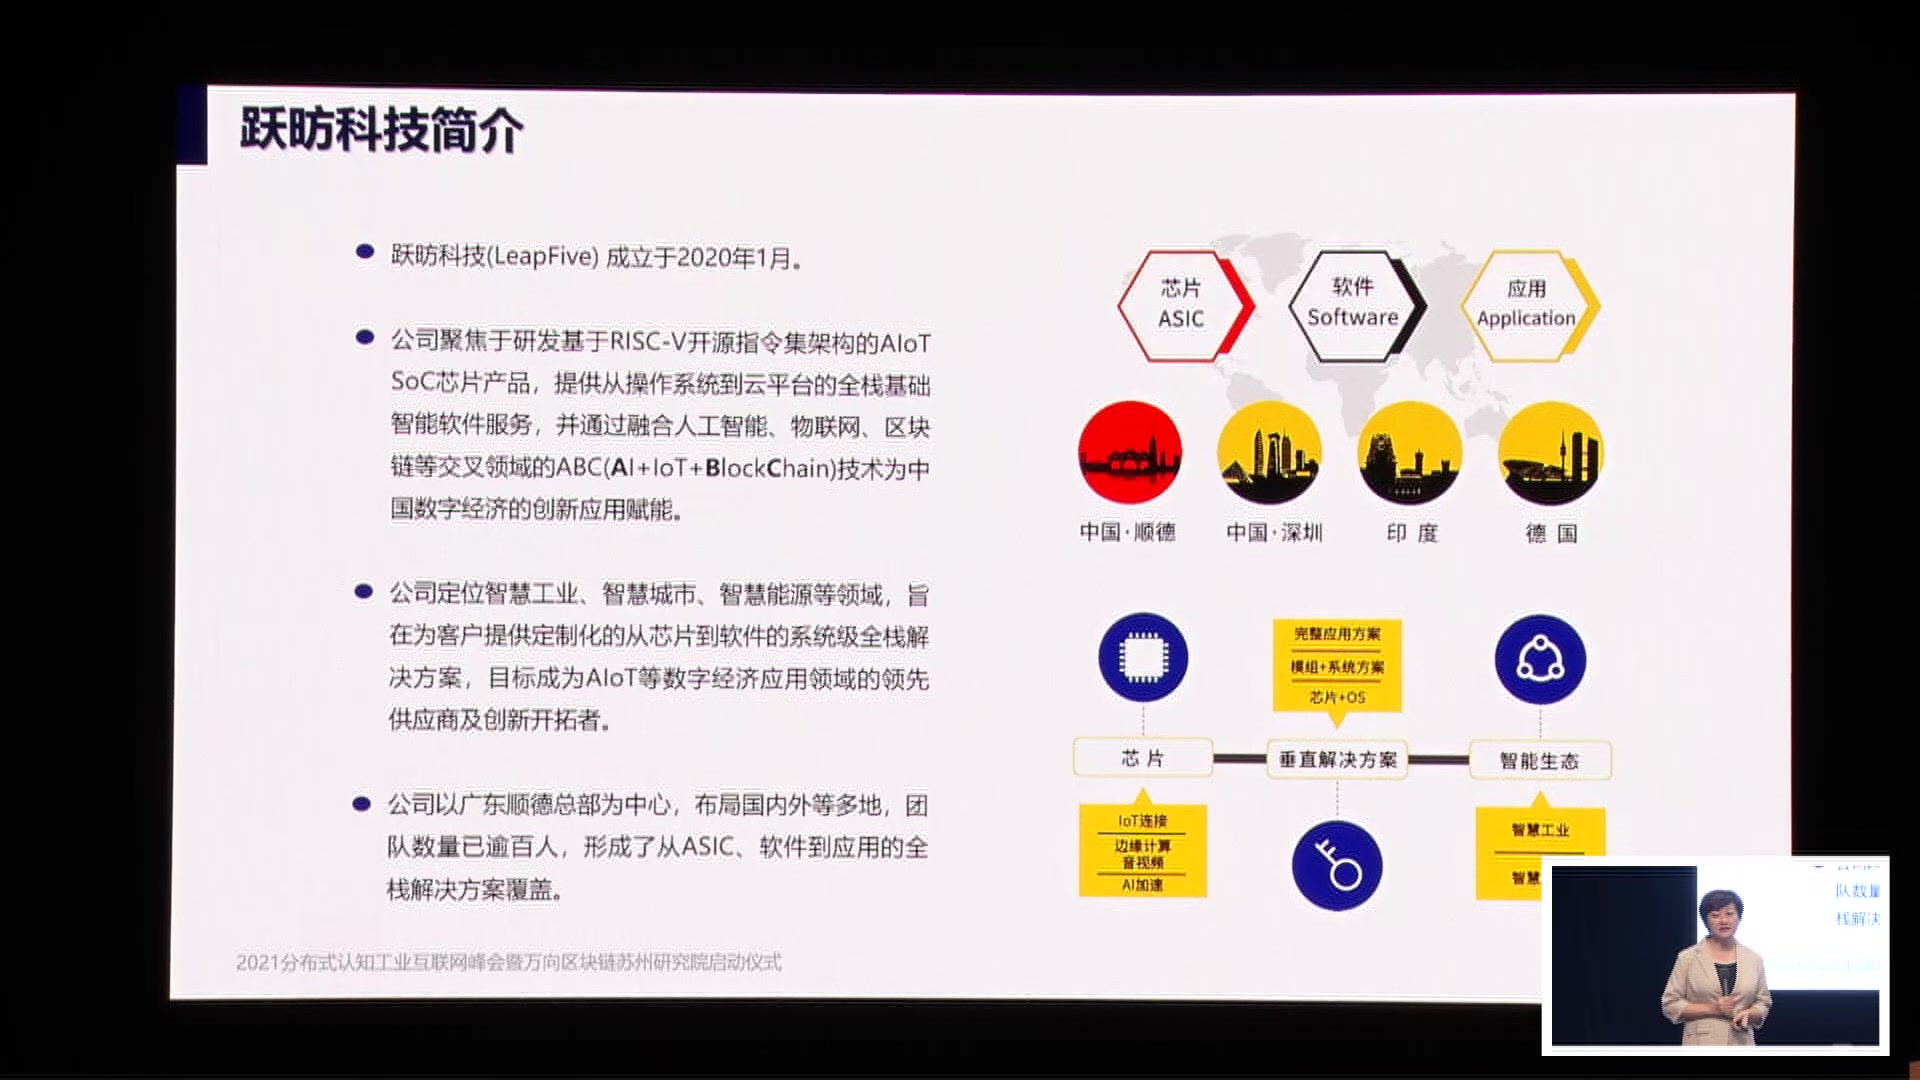 江朝晖@LeapFive - 区块链+AIoT赋能新数字经济 - 第一届 RISC-V 中国峰会 